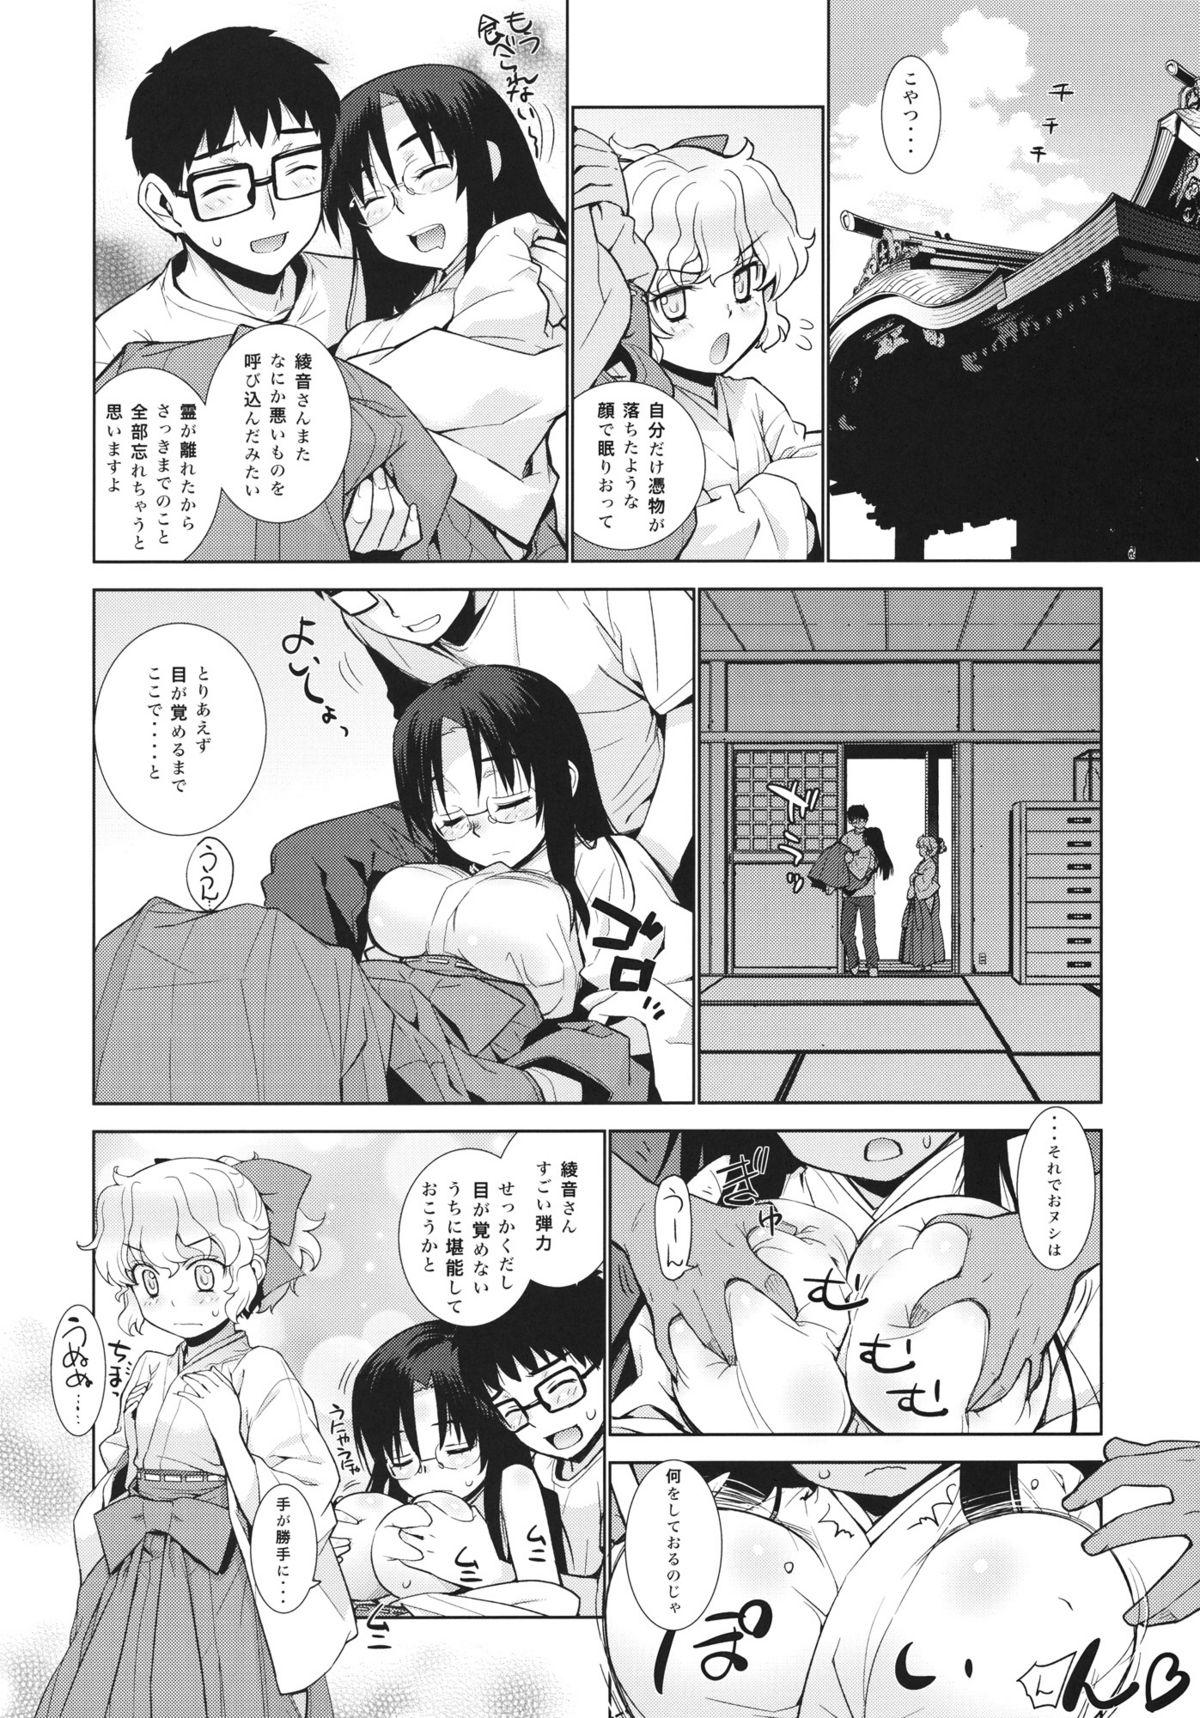 Transex Kanara-sama no Nichijou Nana - Tonari no miko san wa minna warau Upskirt - Page 6